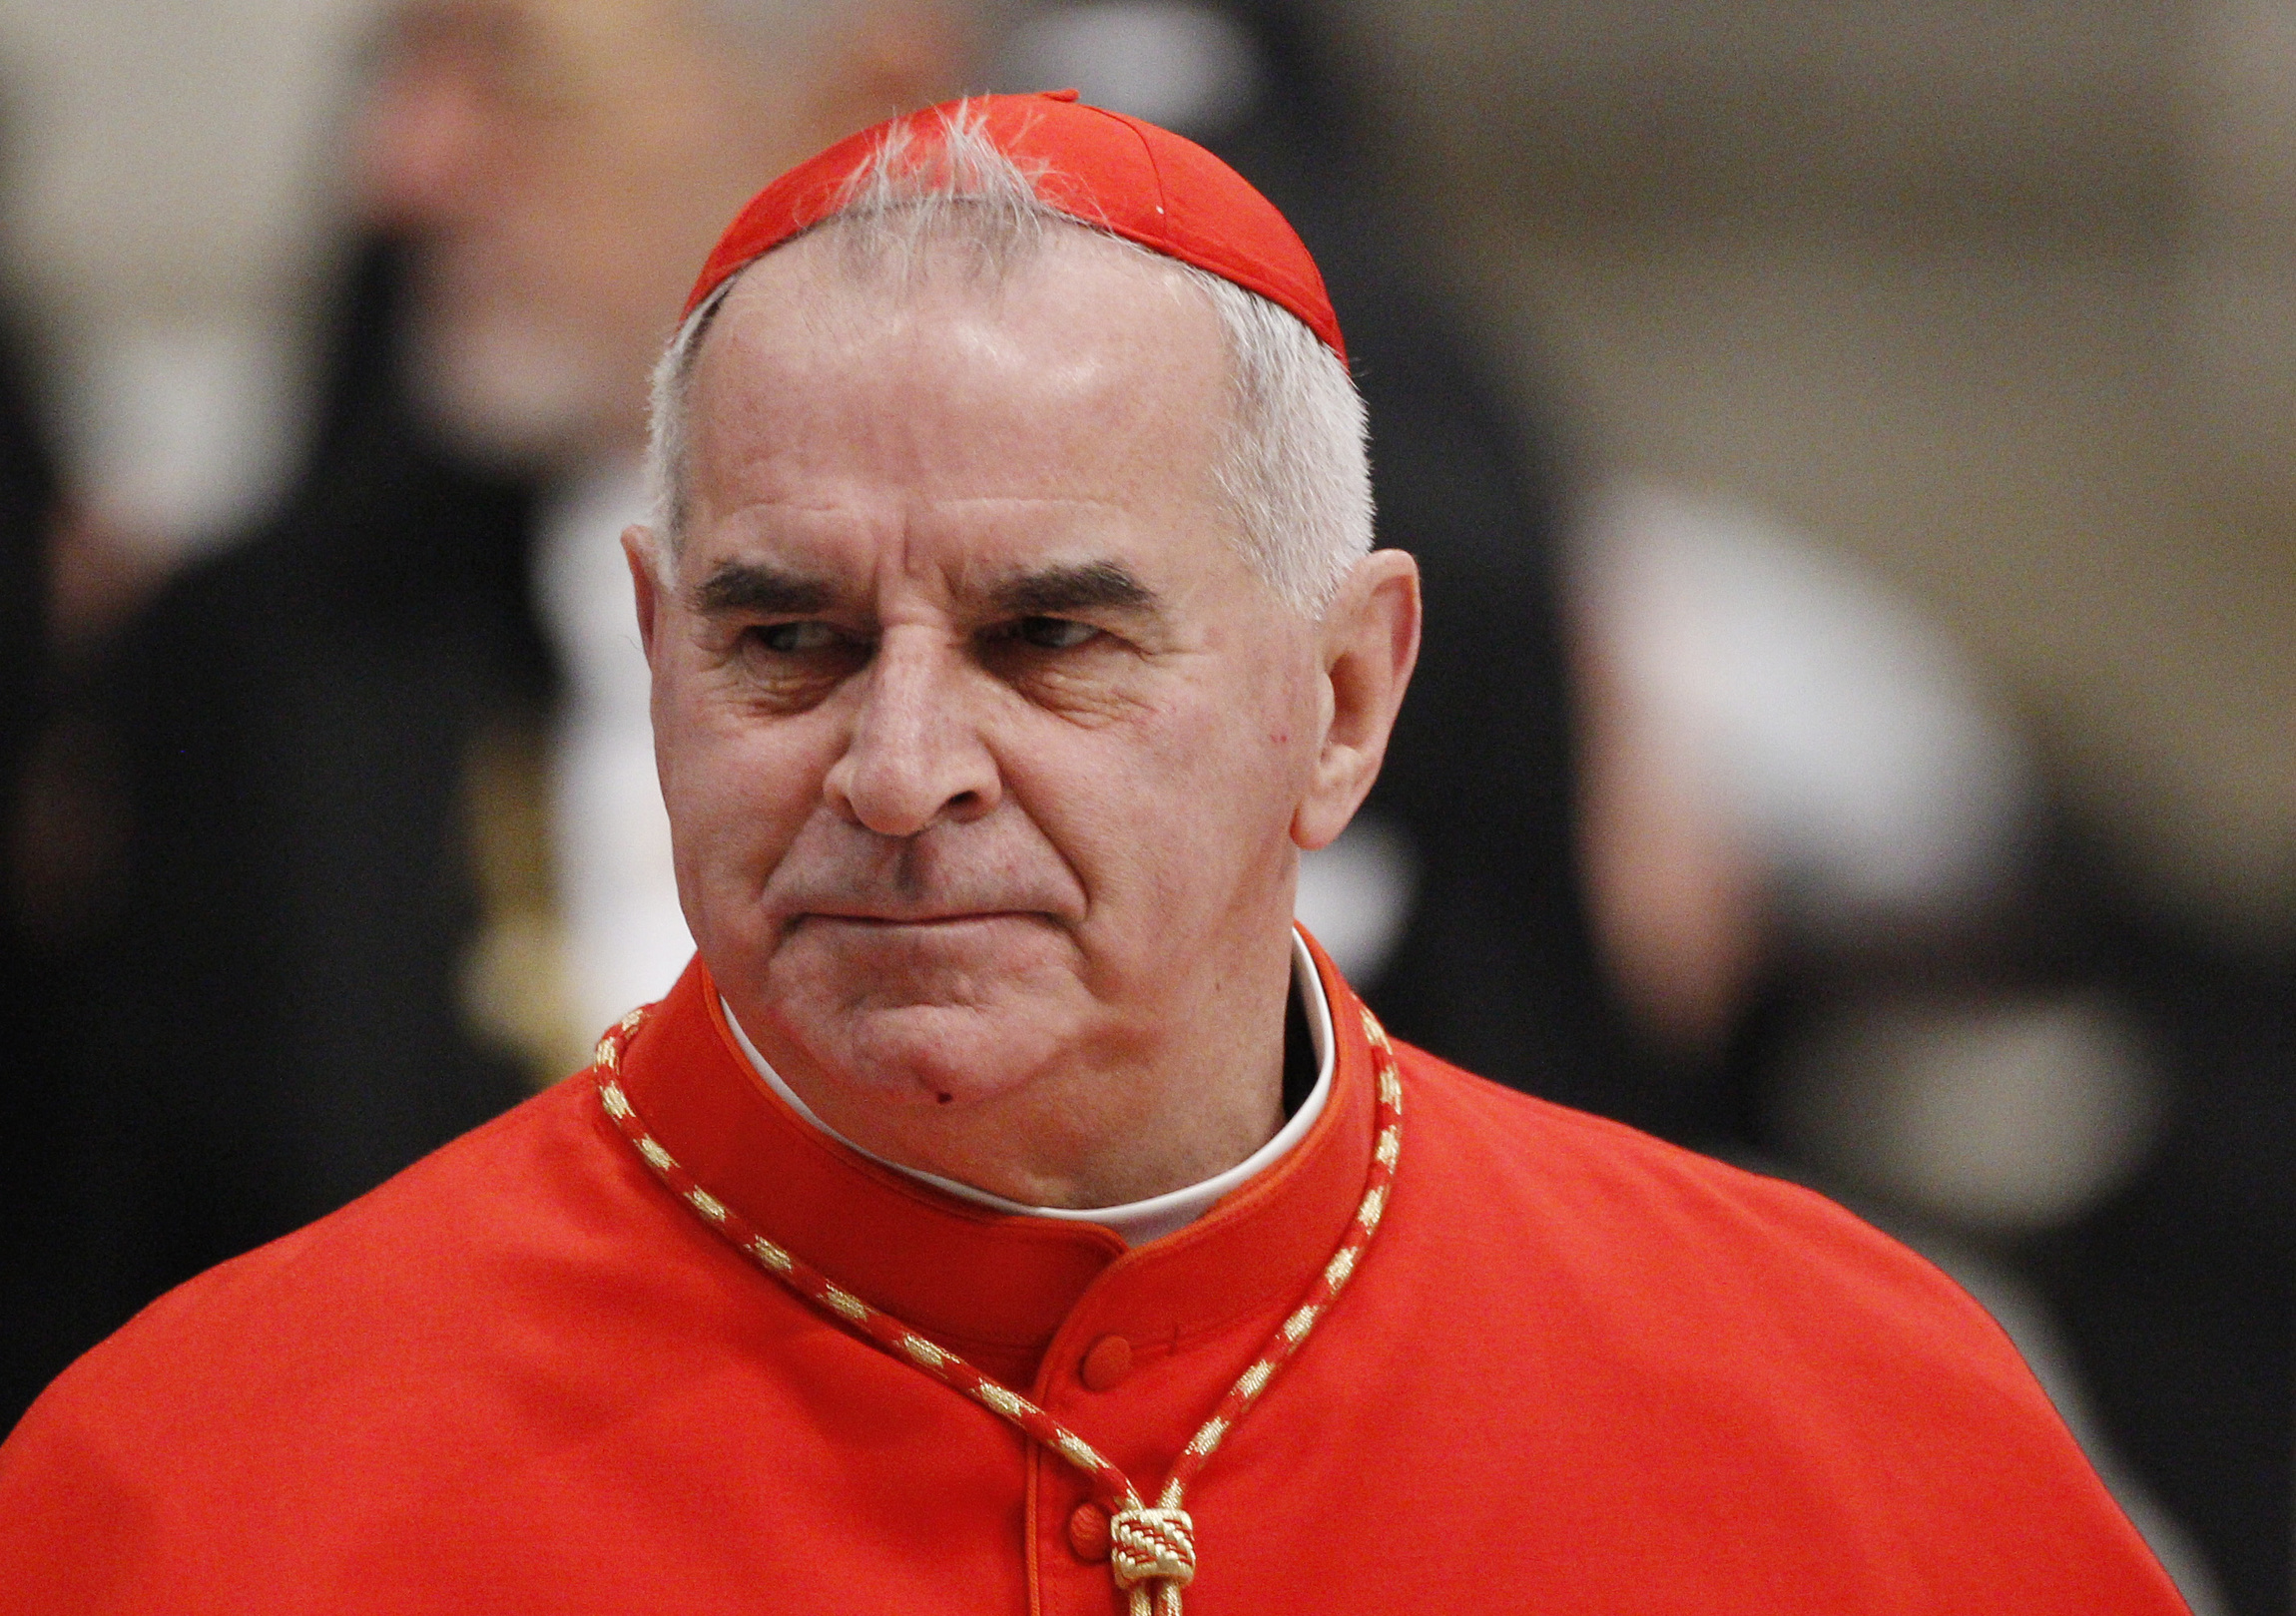 Renuncia del cardenal O'Brien aceptada por el Papa